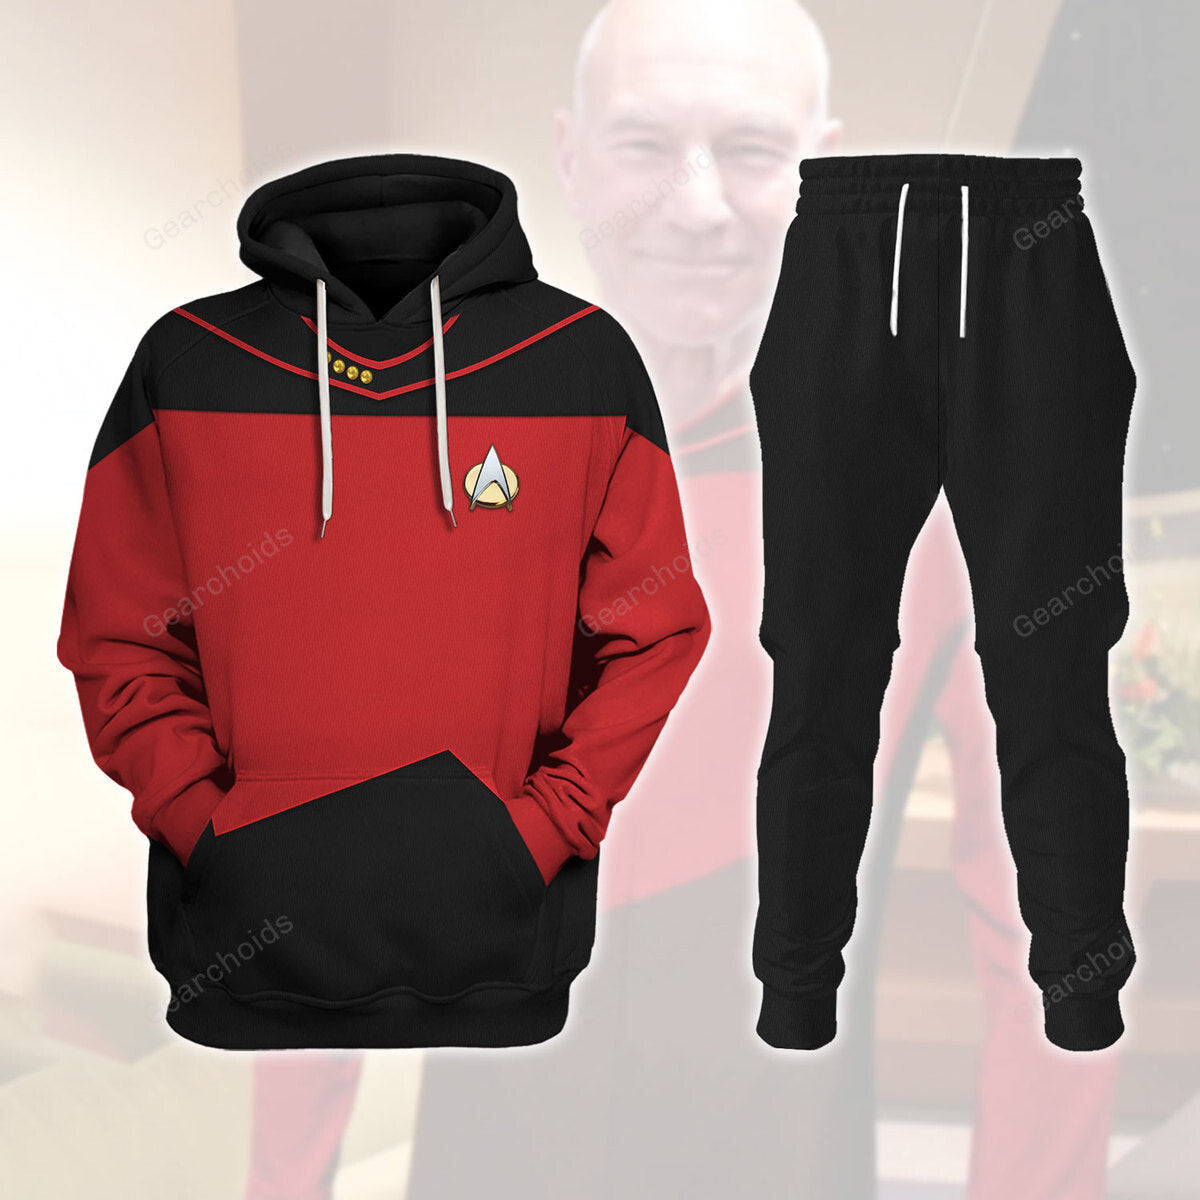 Star Trek Picard The Next Generation Red Costume Hoodie Sweatshirt Sweatpants